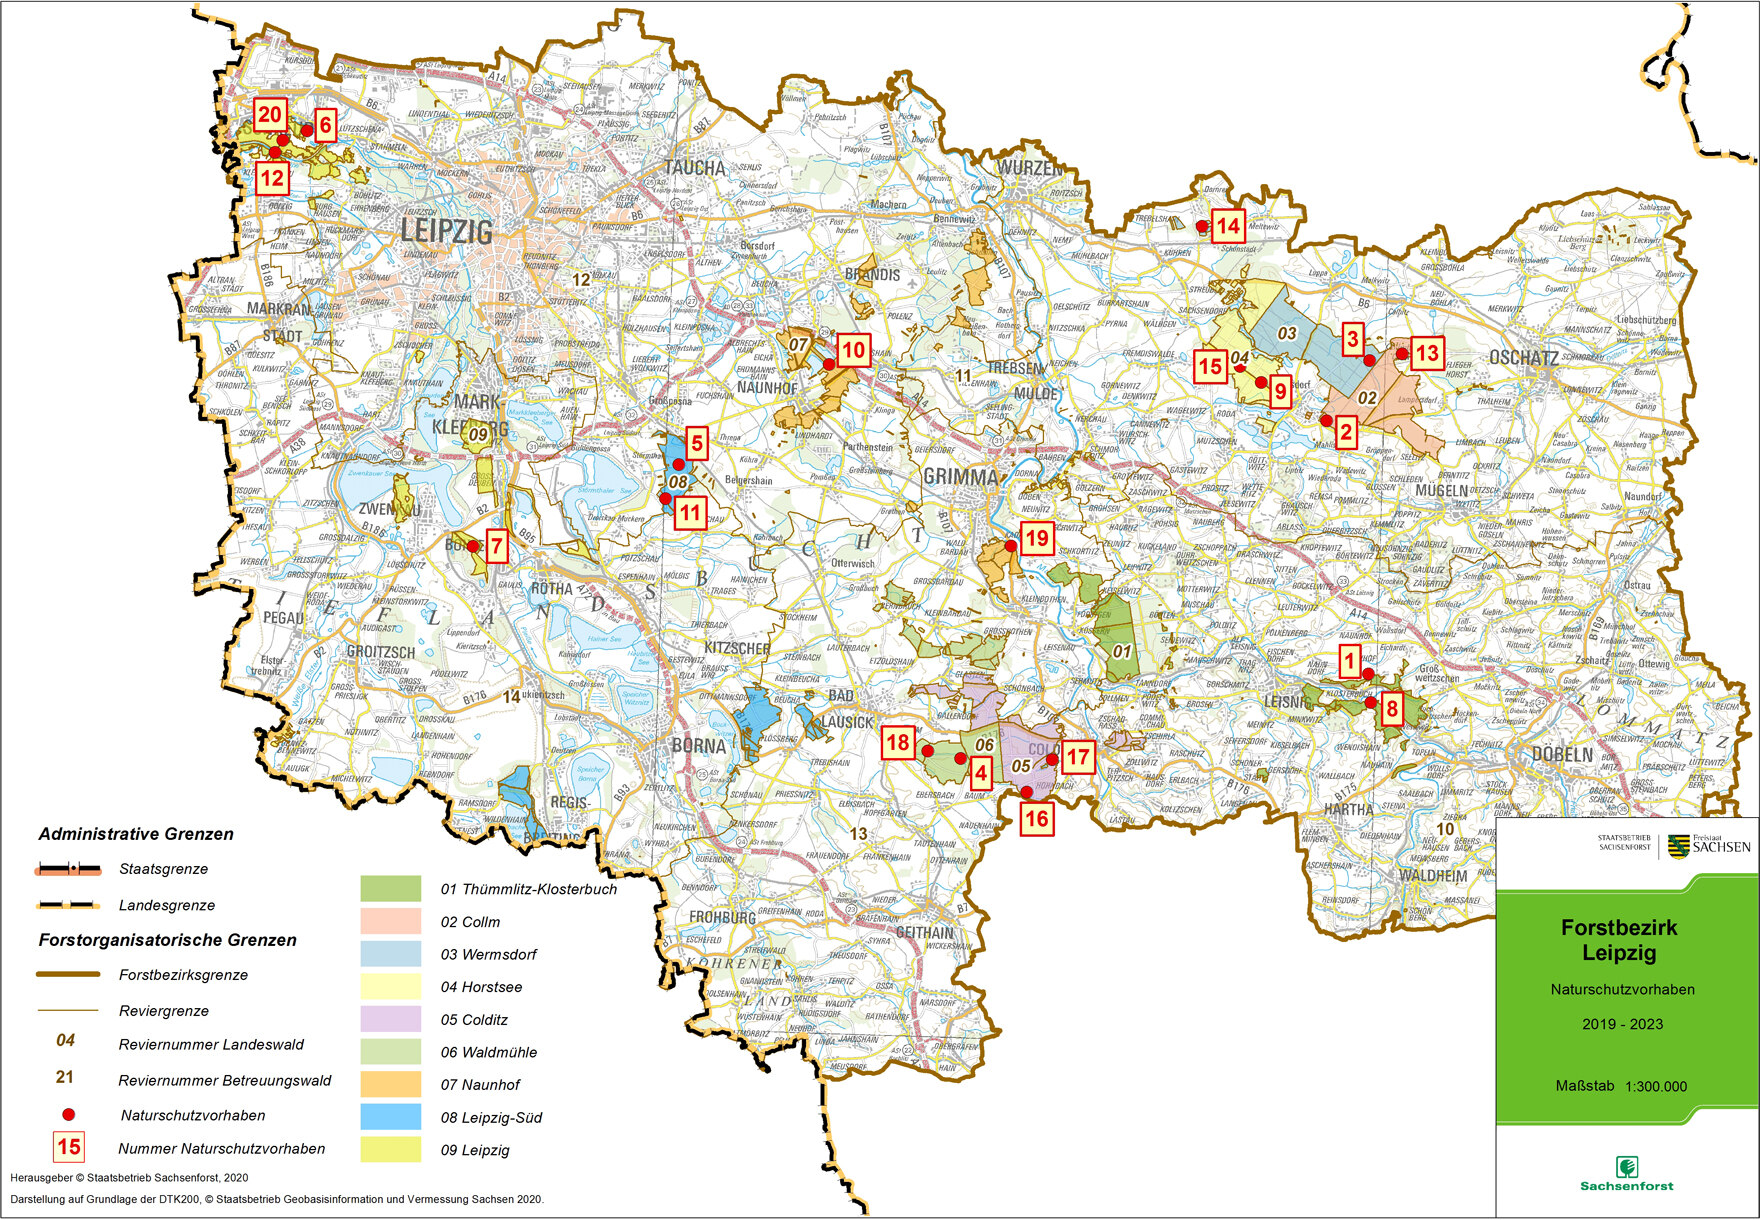 Übersichtskarte des Forstbezirkes Leipzig mit den Standorten der Naturschutzprojekte